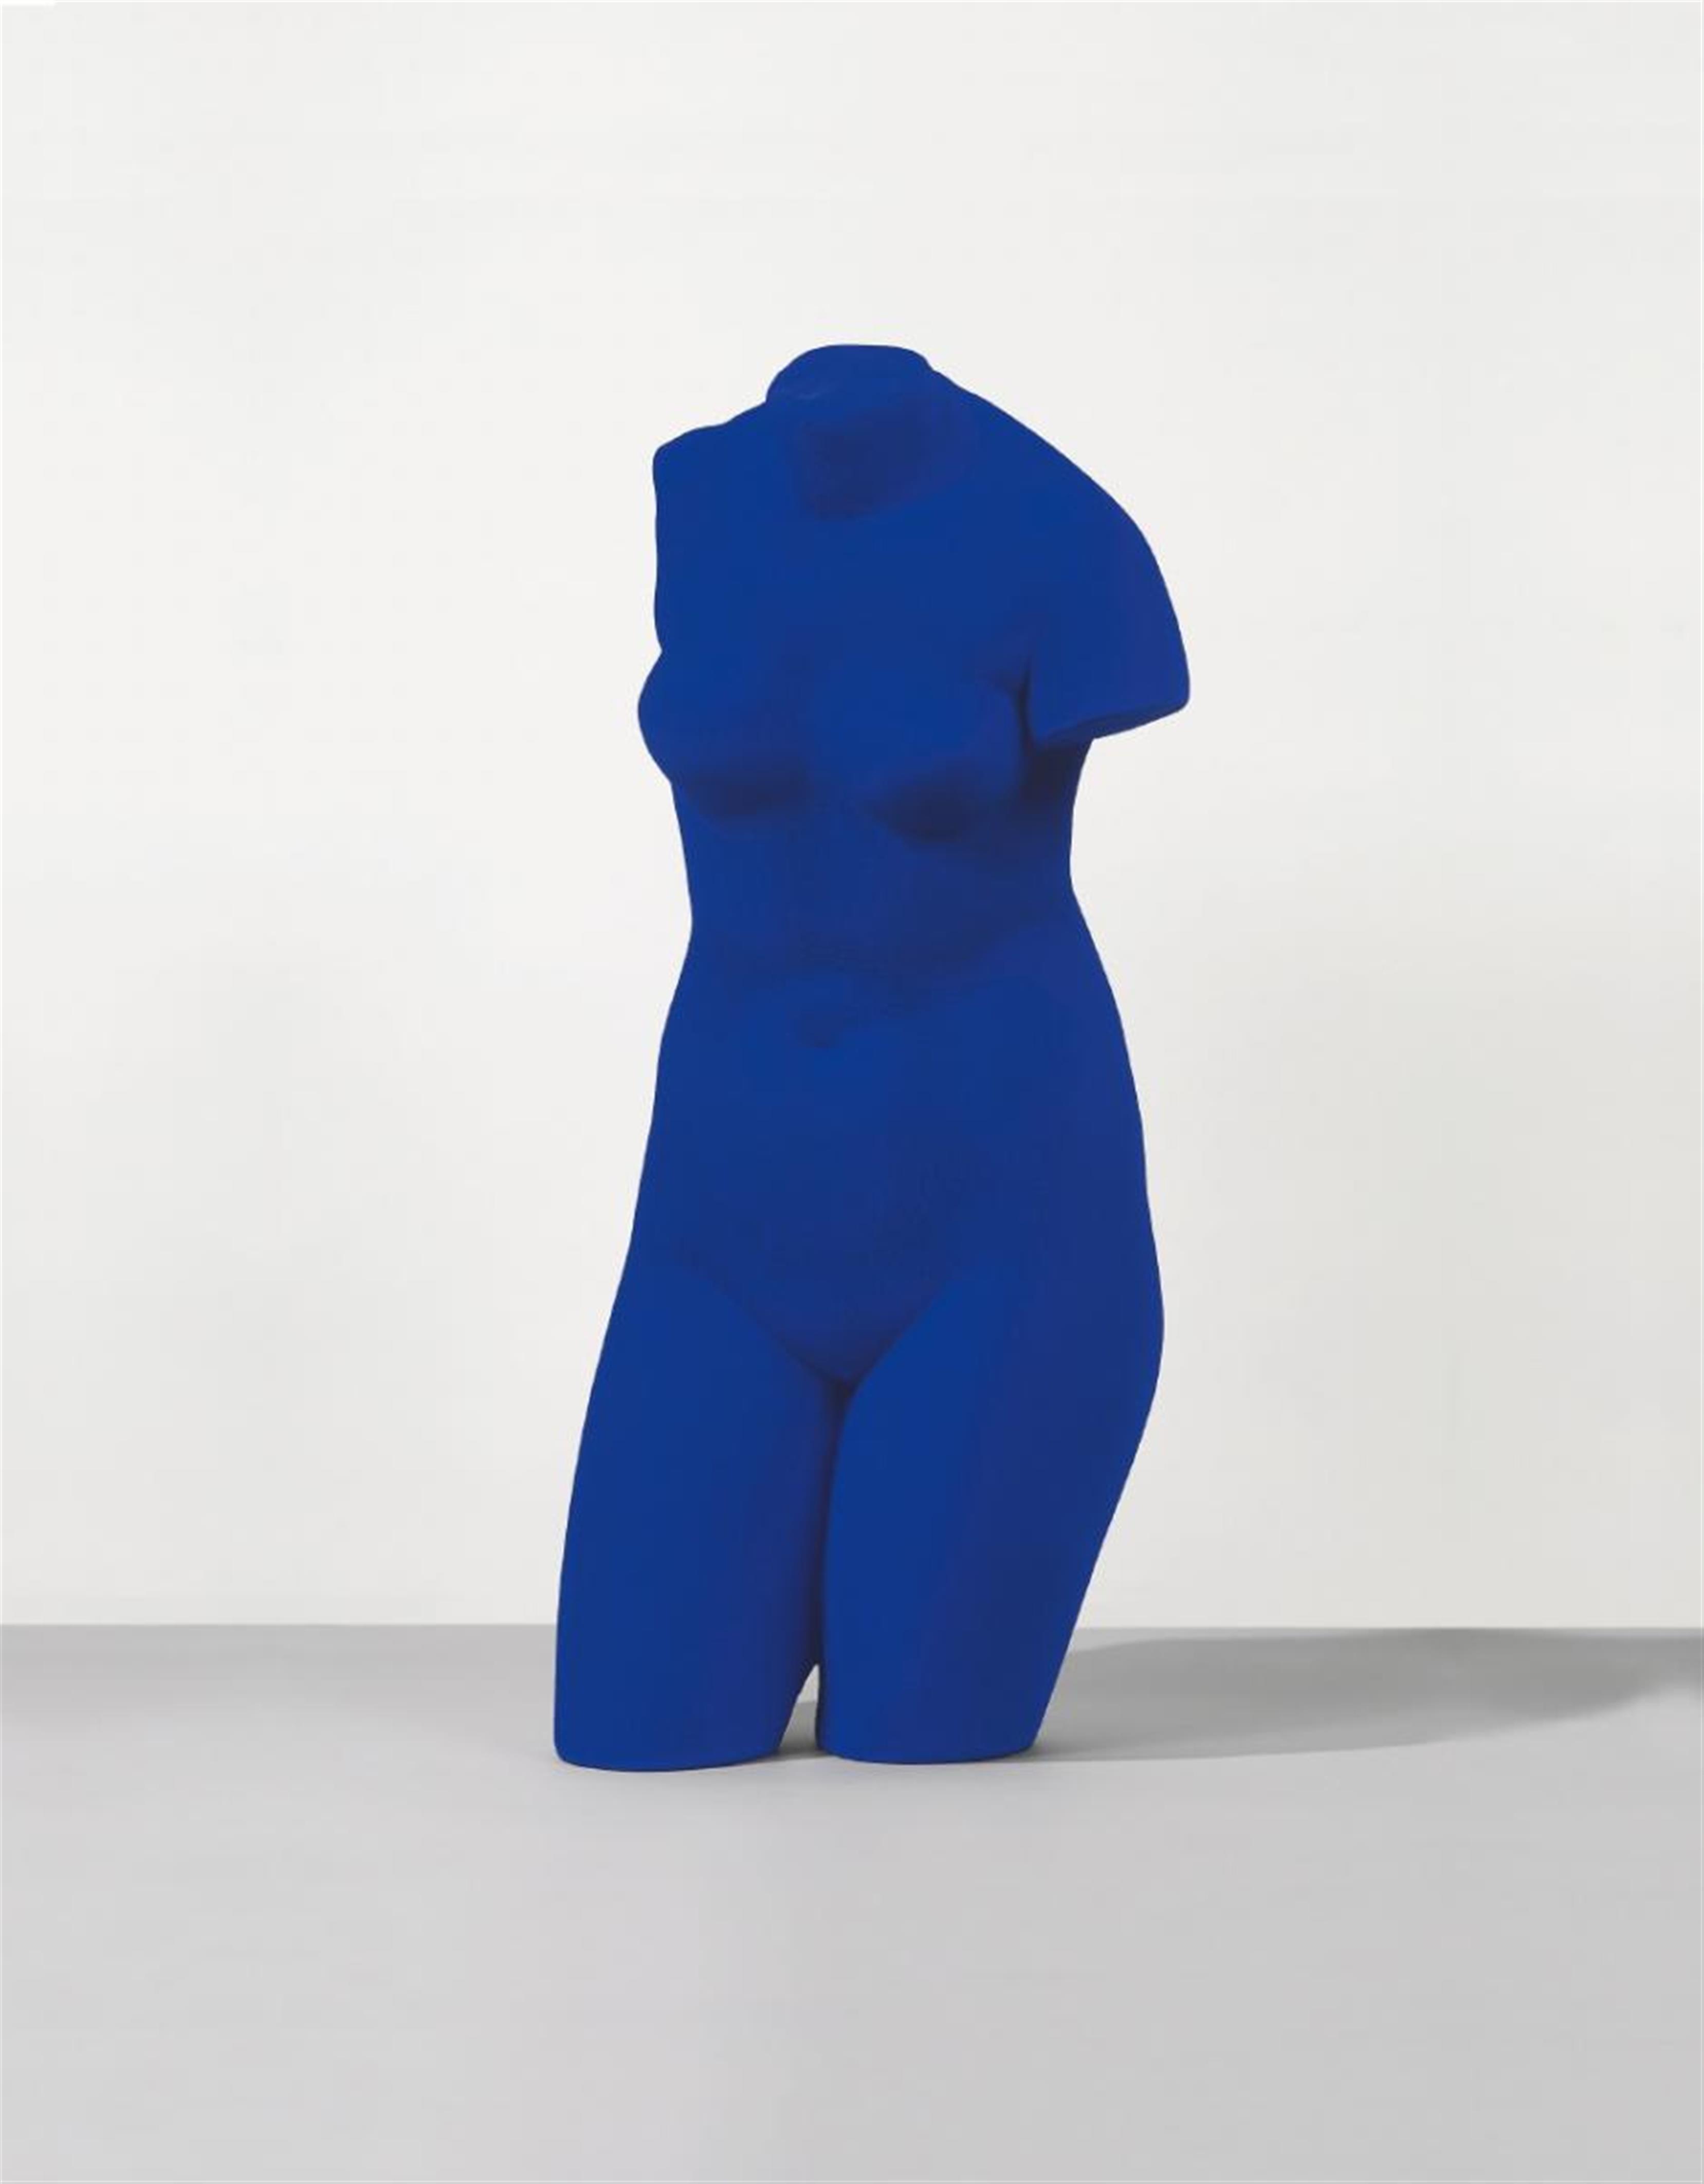 Yves Klein - Vénus Bleue - image-1